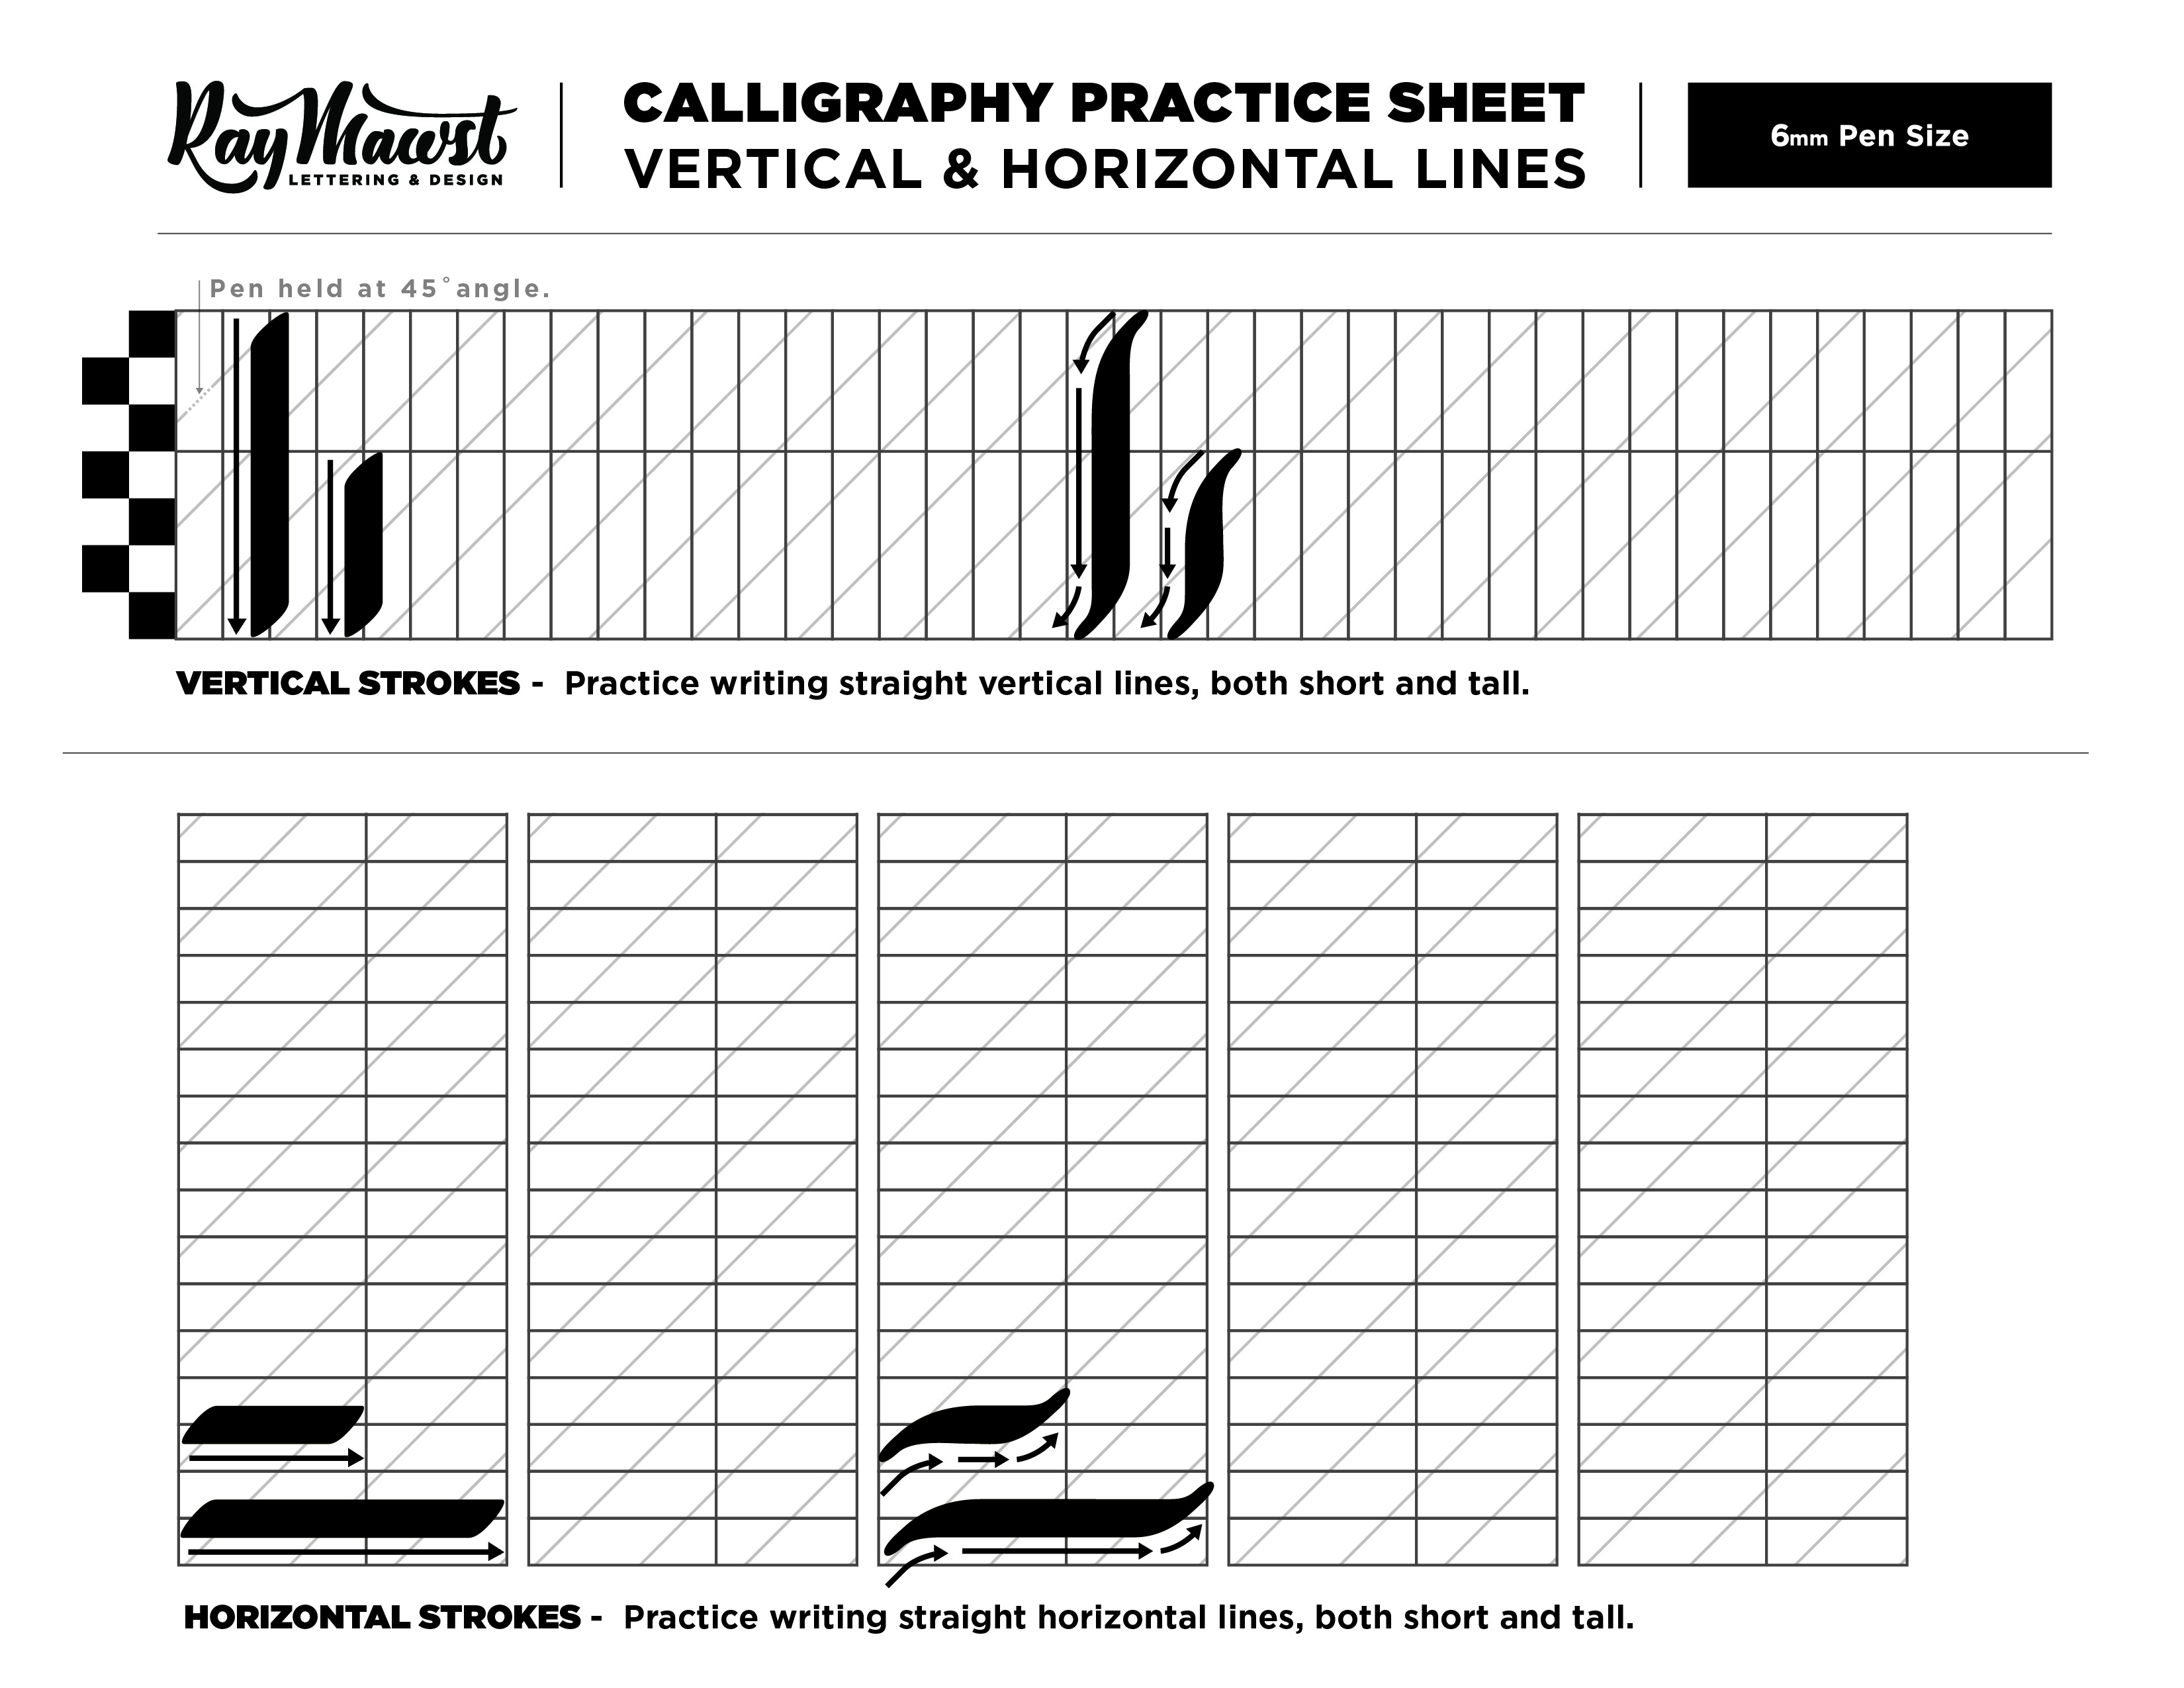 Calligraphy Worksheet Starter Kit - 3 Styles — Ray Mawst Lettering & Design